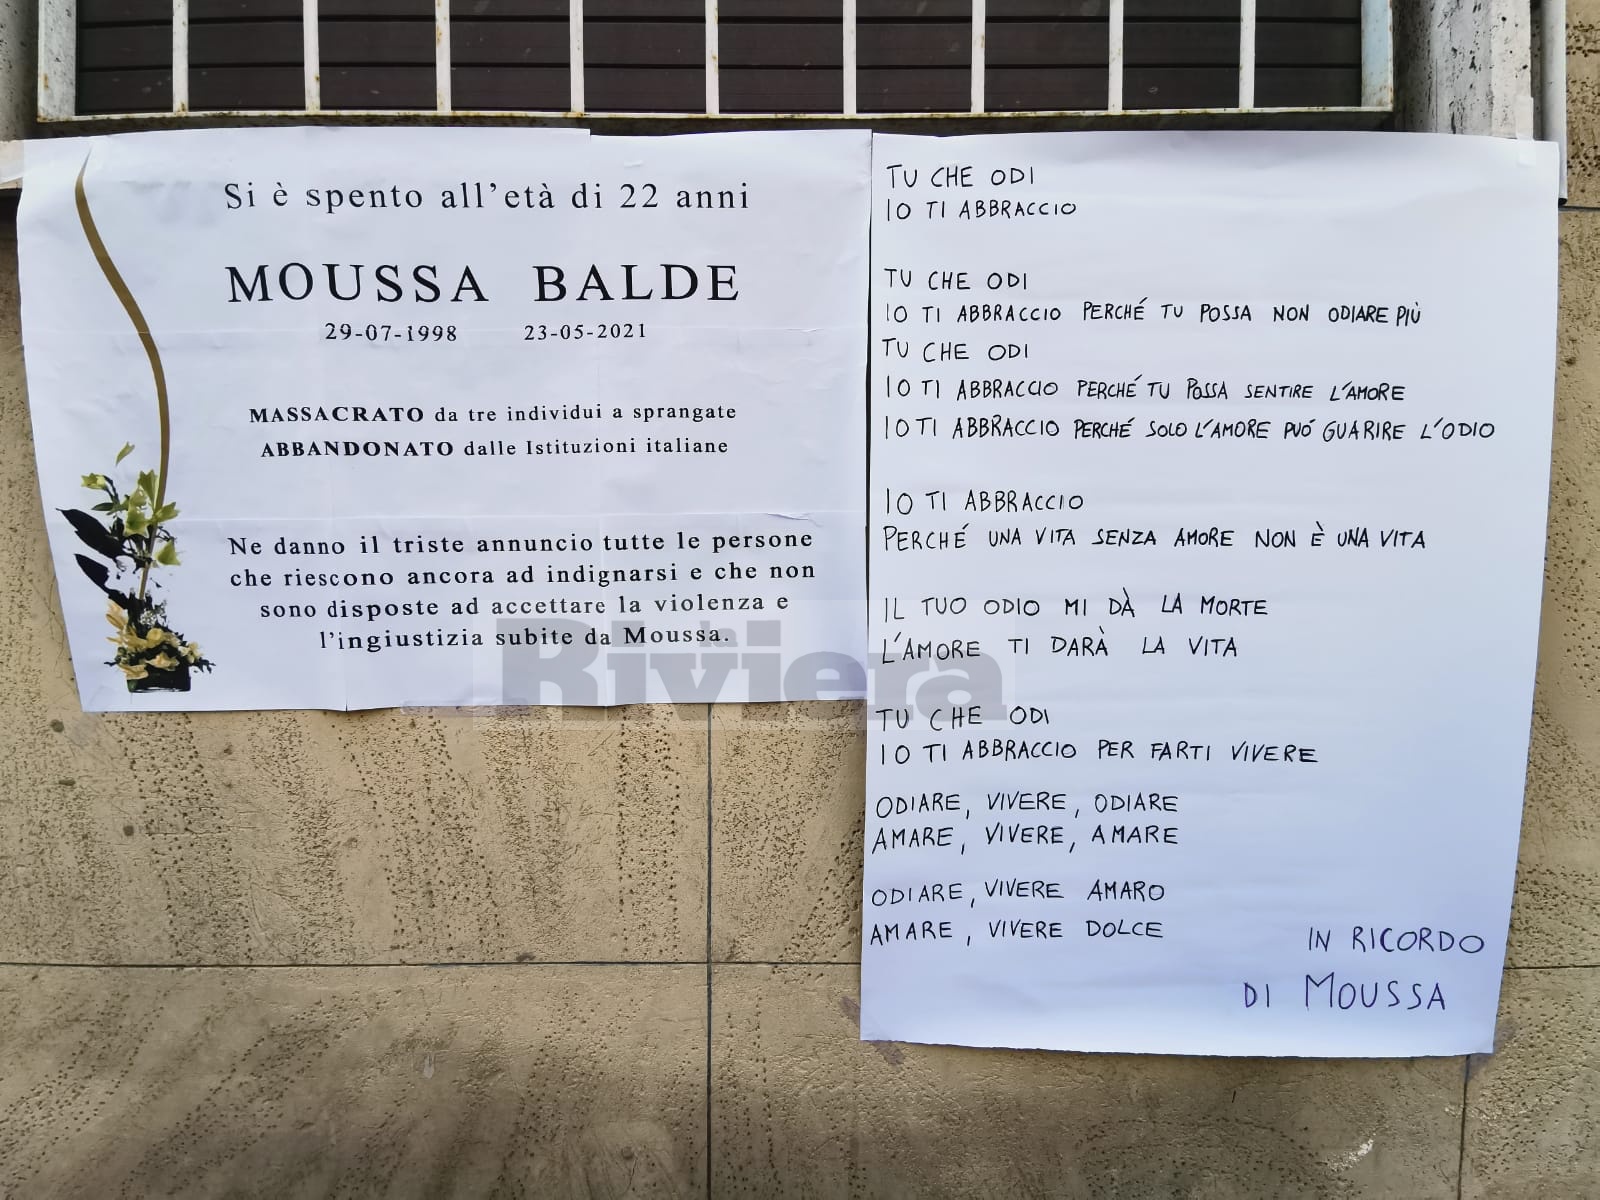 Moussa Balde flash mob migrante sprangate suicidio Cpr Torino_04